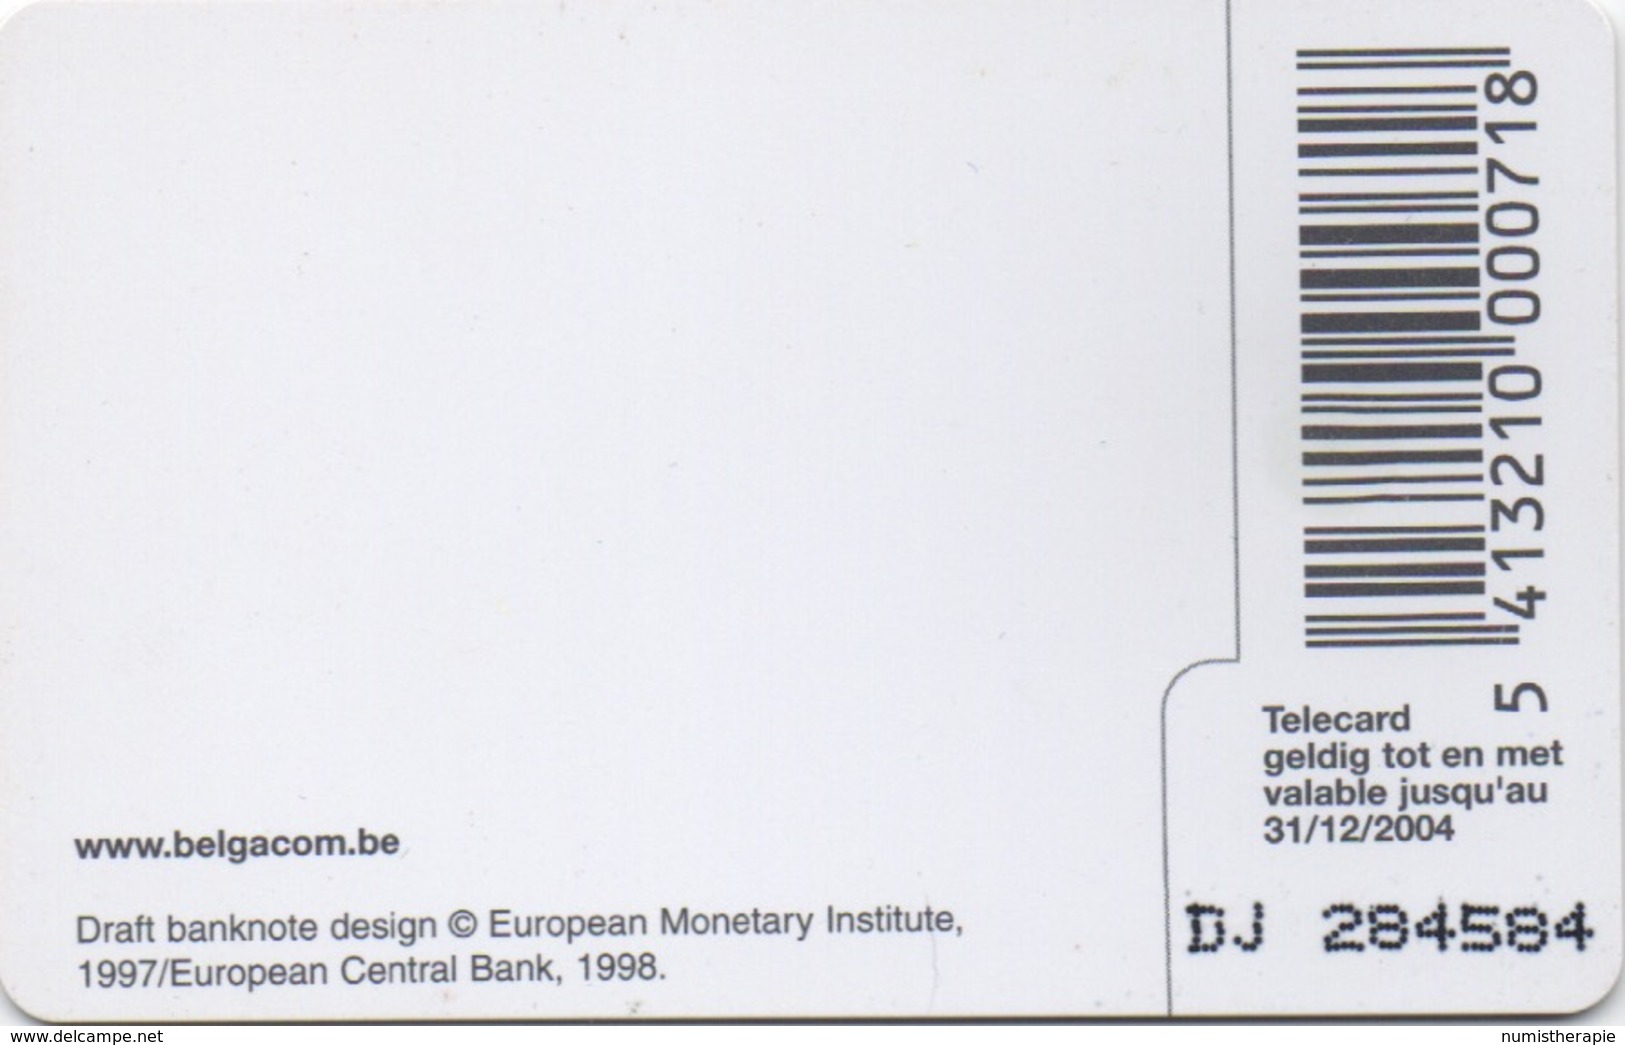 Télécarte Belgacom : 5 EUR Billet De Banque (202 BEF) Valable Jusqu'au 31/12/2004 - Stamps & Coins